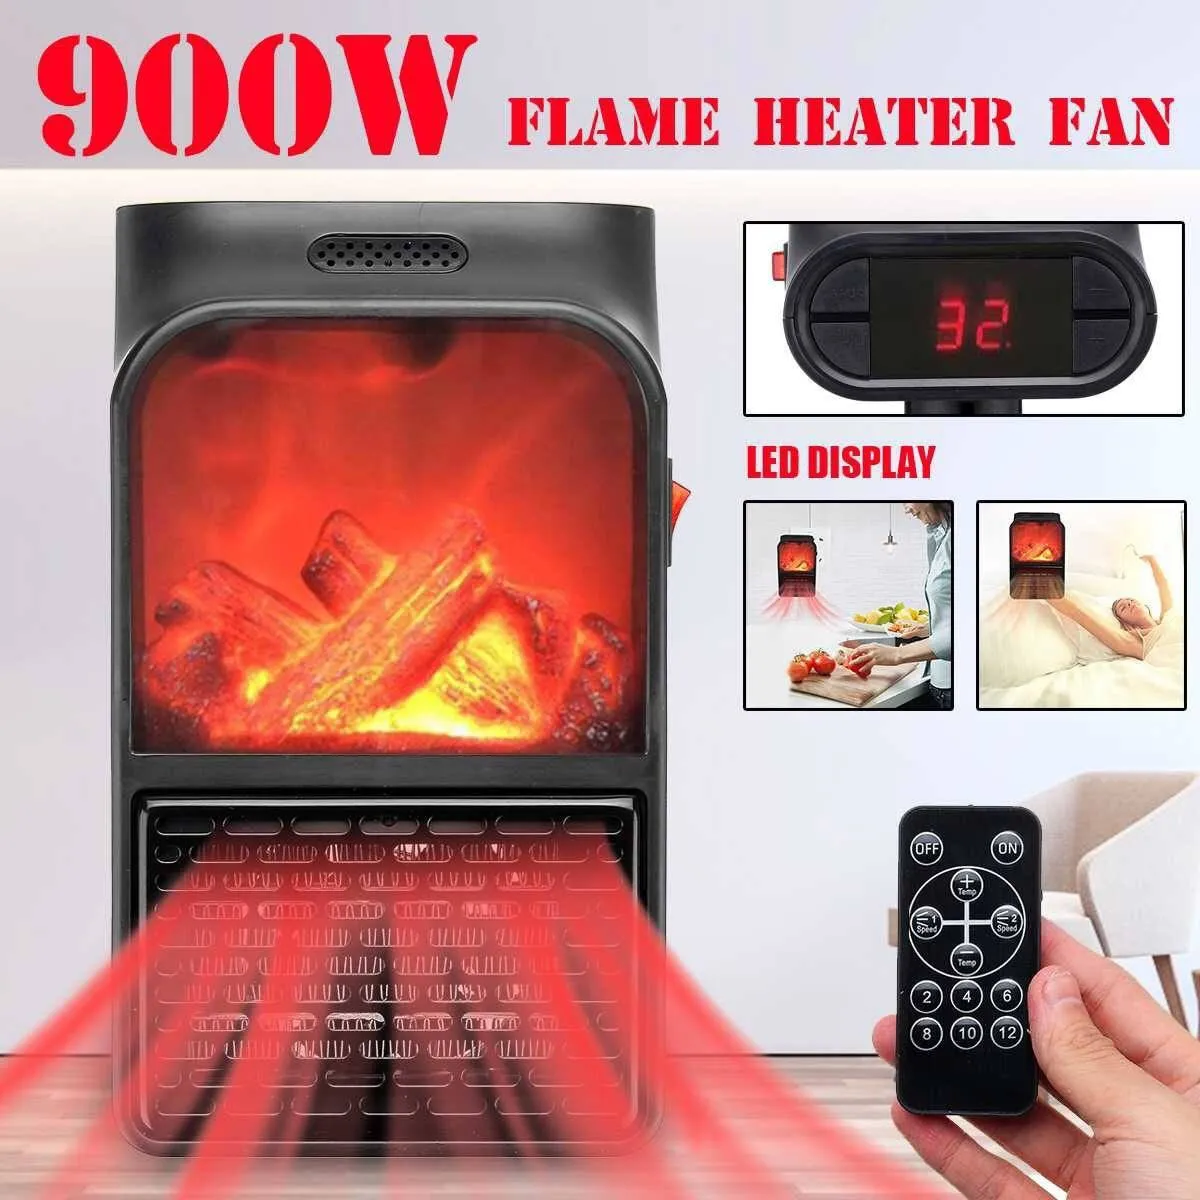 Мини обогреватель-камин Flame Heater 900 W#3